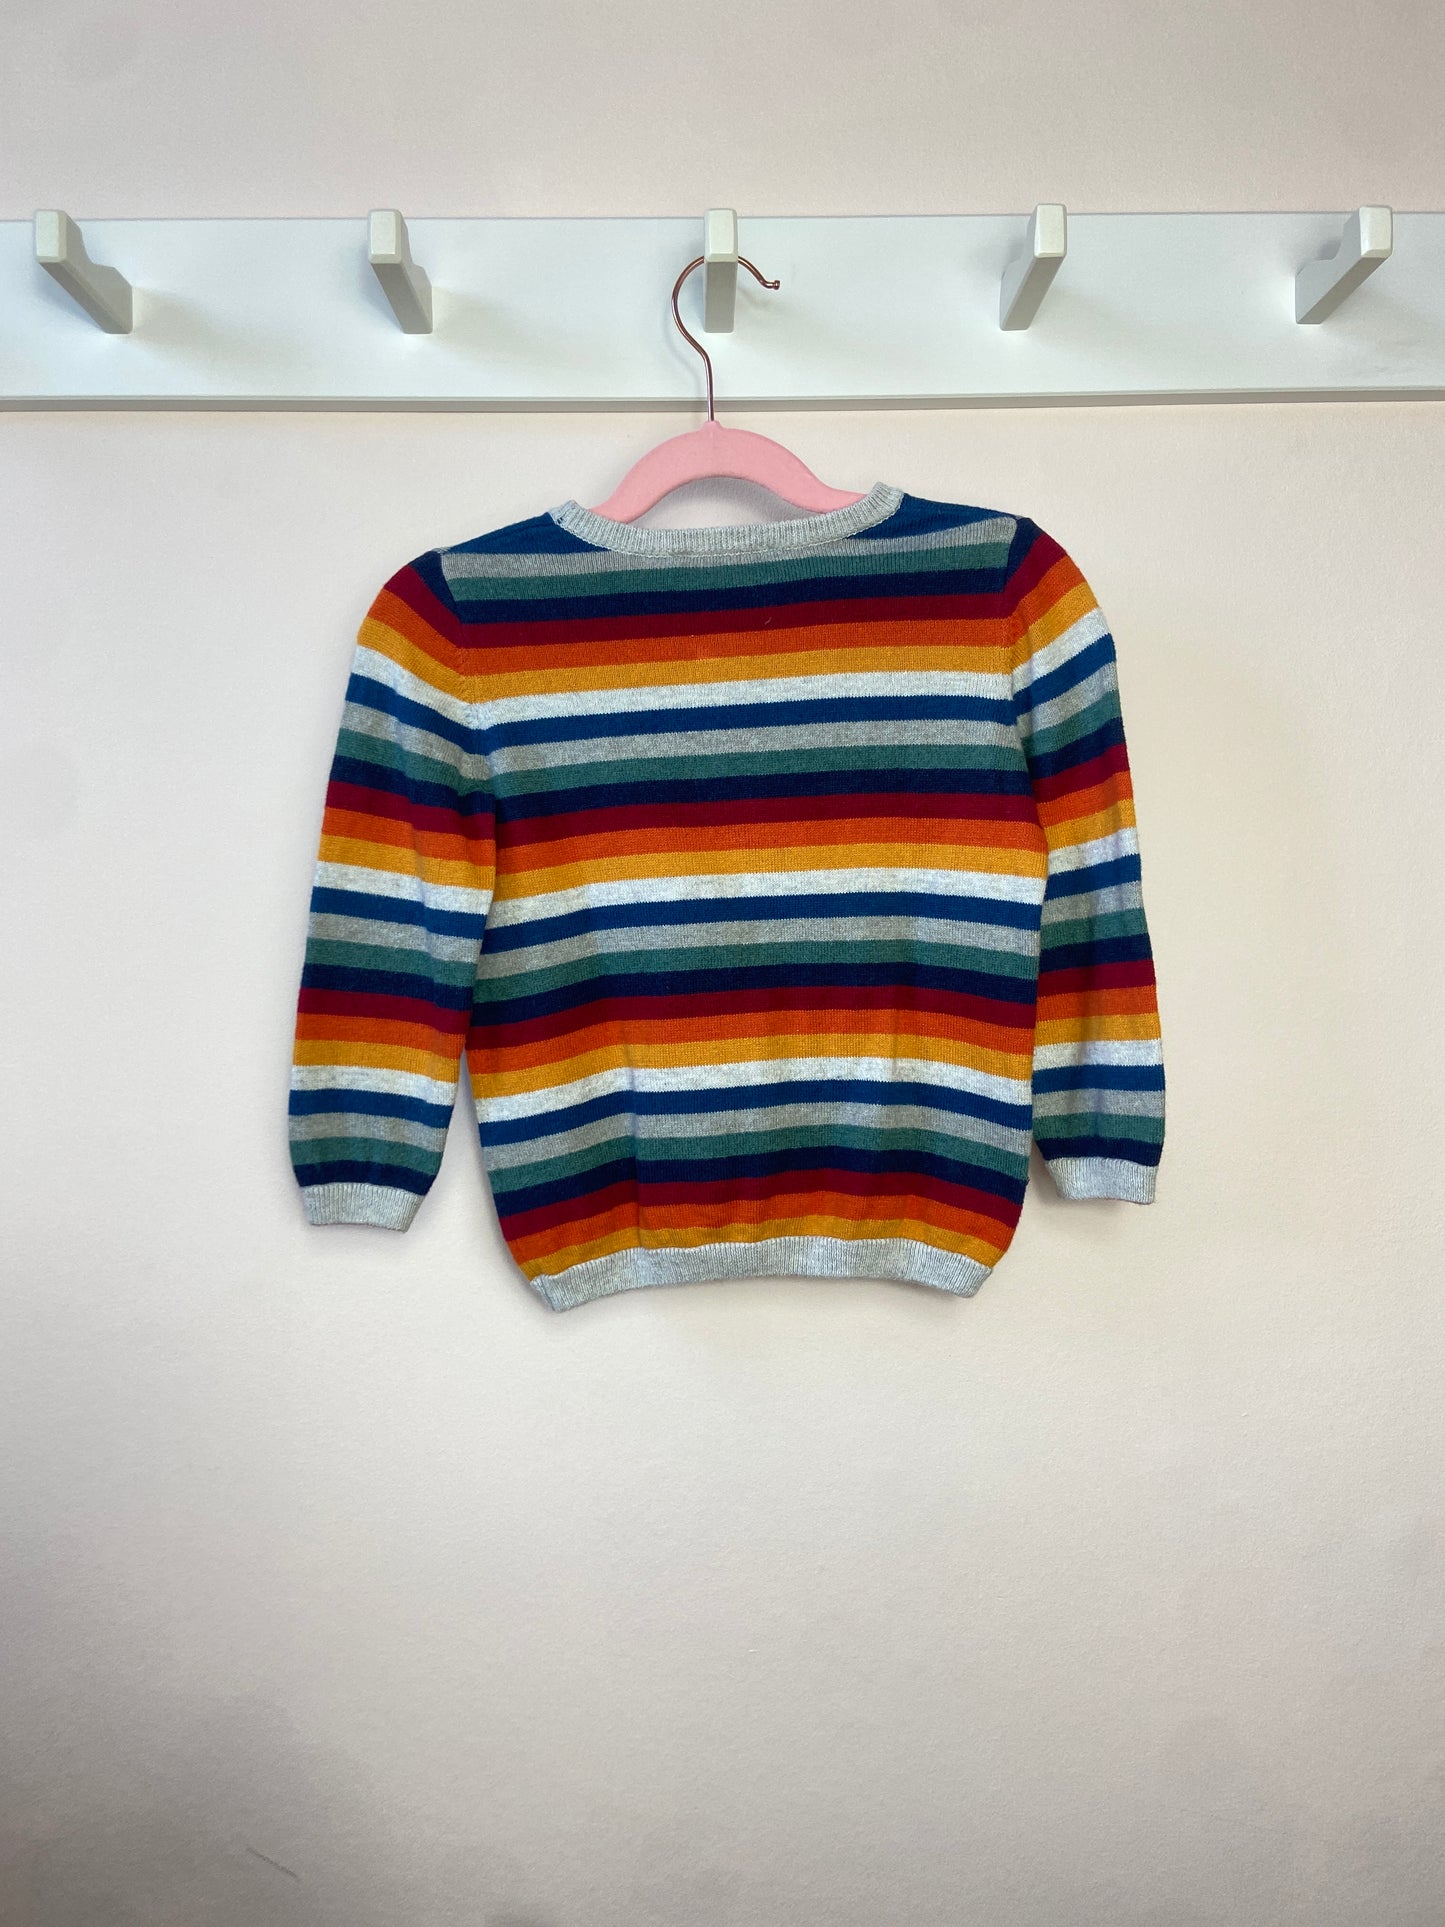 2 Y Rainbow striped jumper